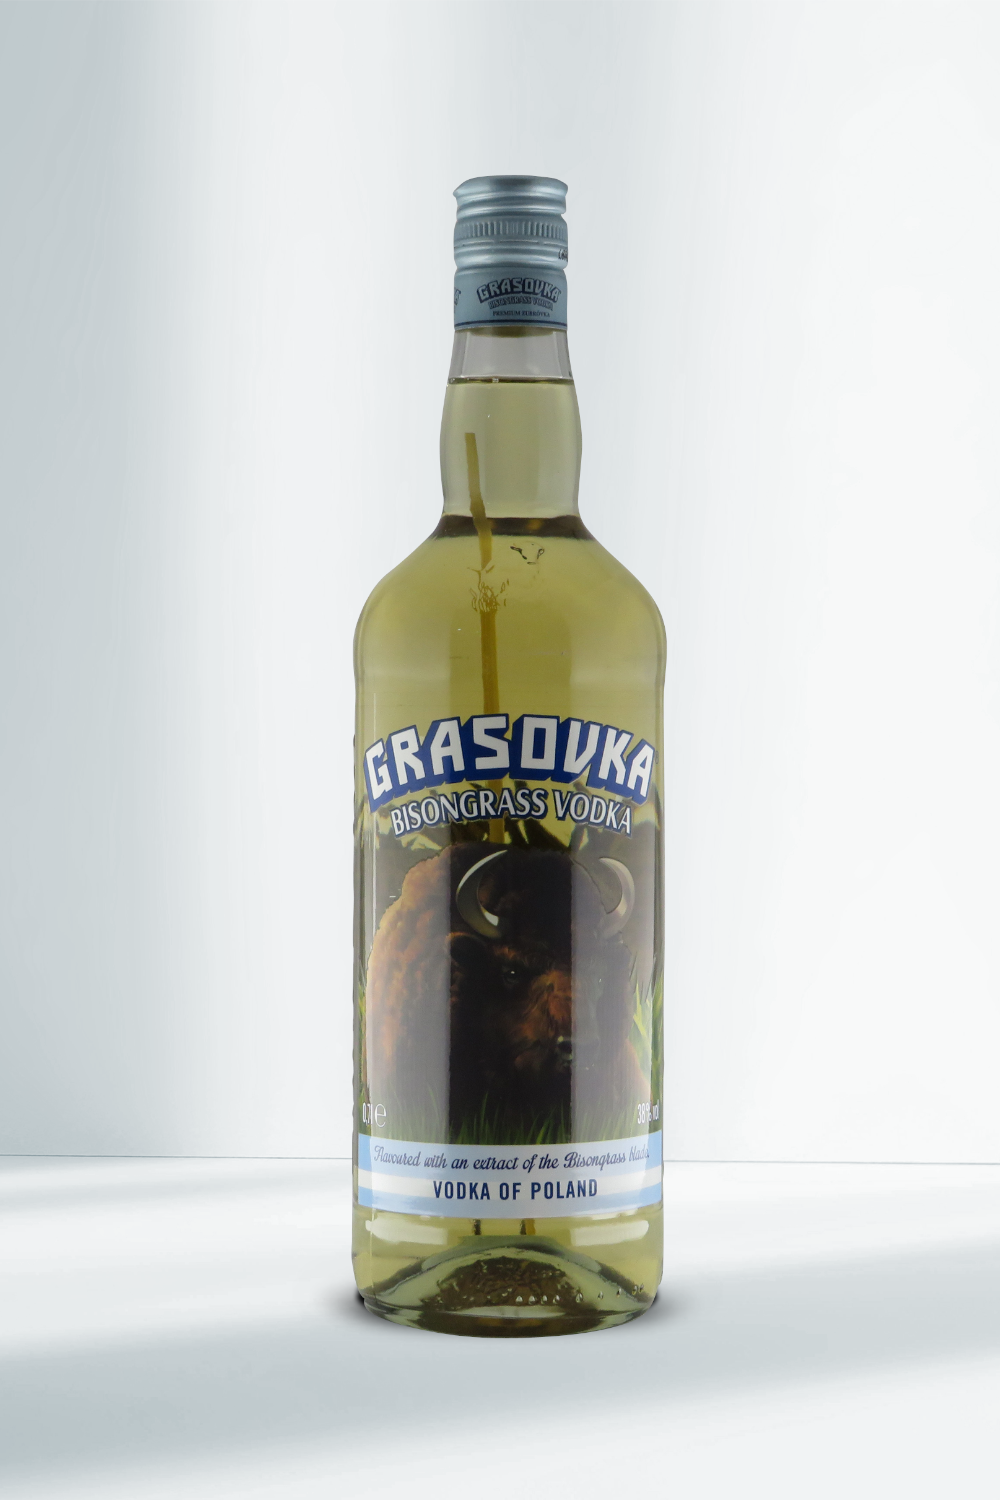 Vodka I Bisongrass 0,7l Grasovka 38% Beverage-Shop